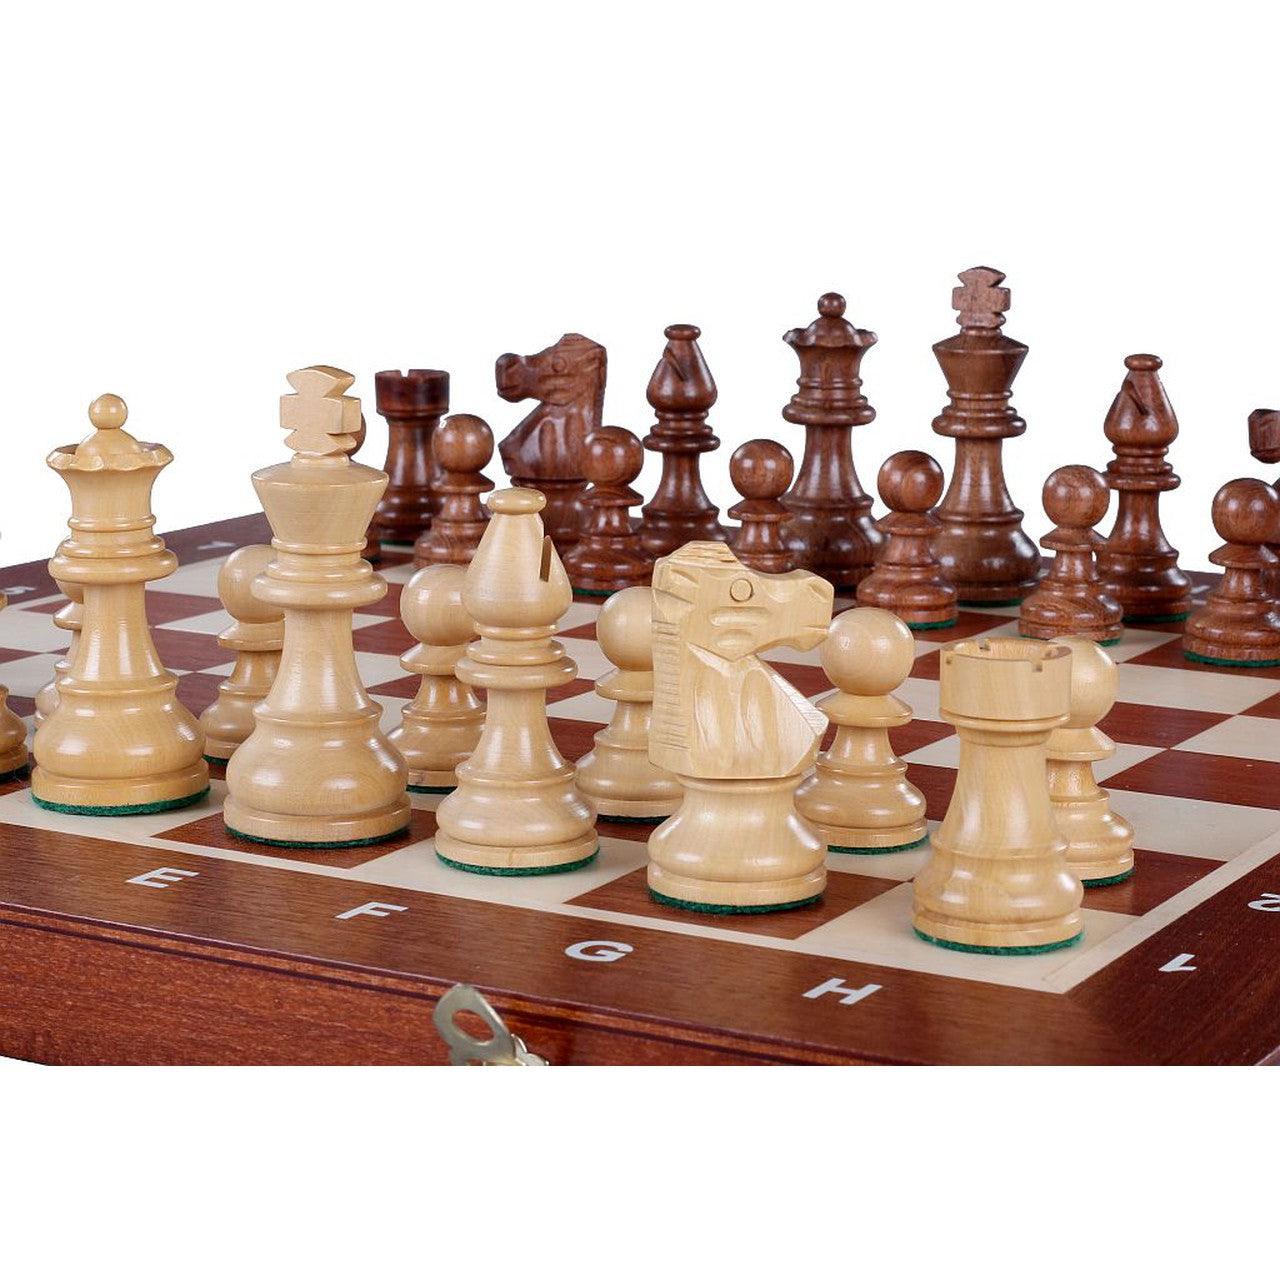 FRENCH STAUNTON Chess Set